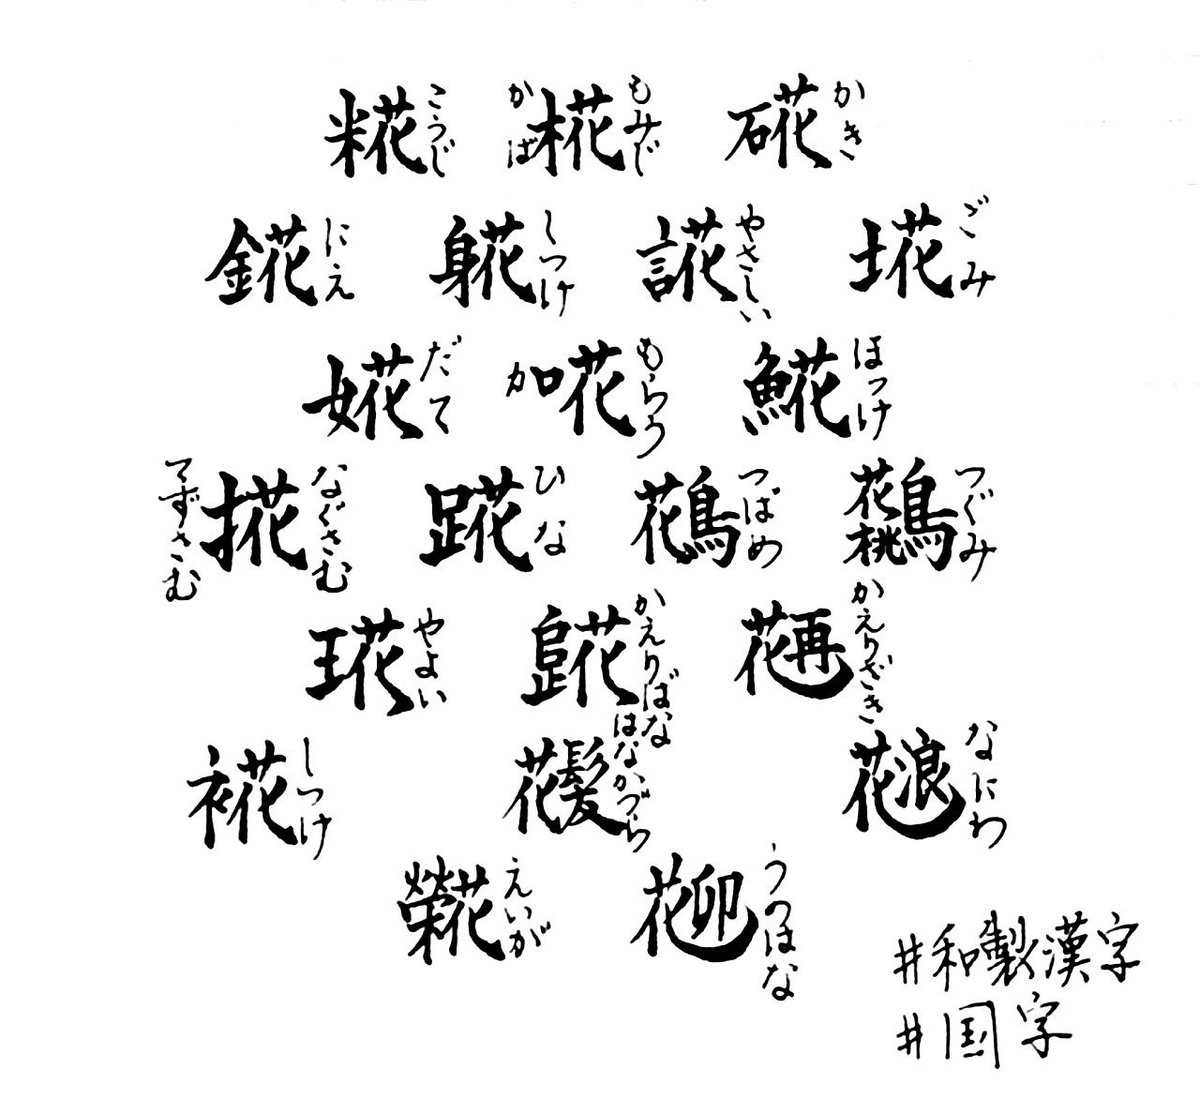 拾萬字鏡 Mr Mosgis 国字に 花 がつく字は多いです 花が咲き散る姿こそうつくしい という無常観 もののあはれを見出す日本人独特の感性なんでしょうね T Co Xhbrntqtxw Twitter